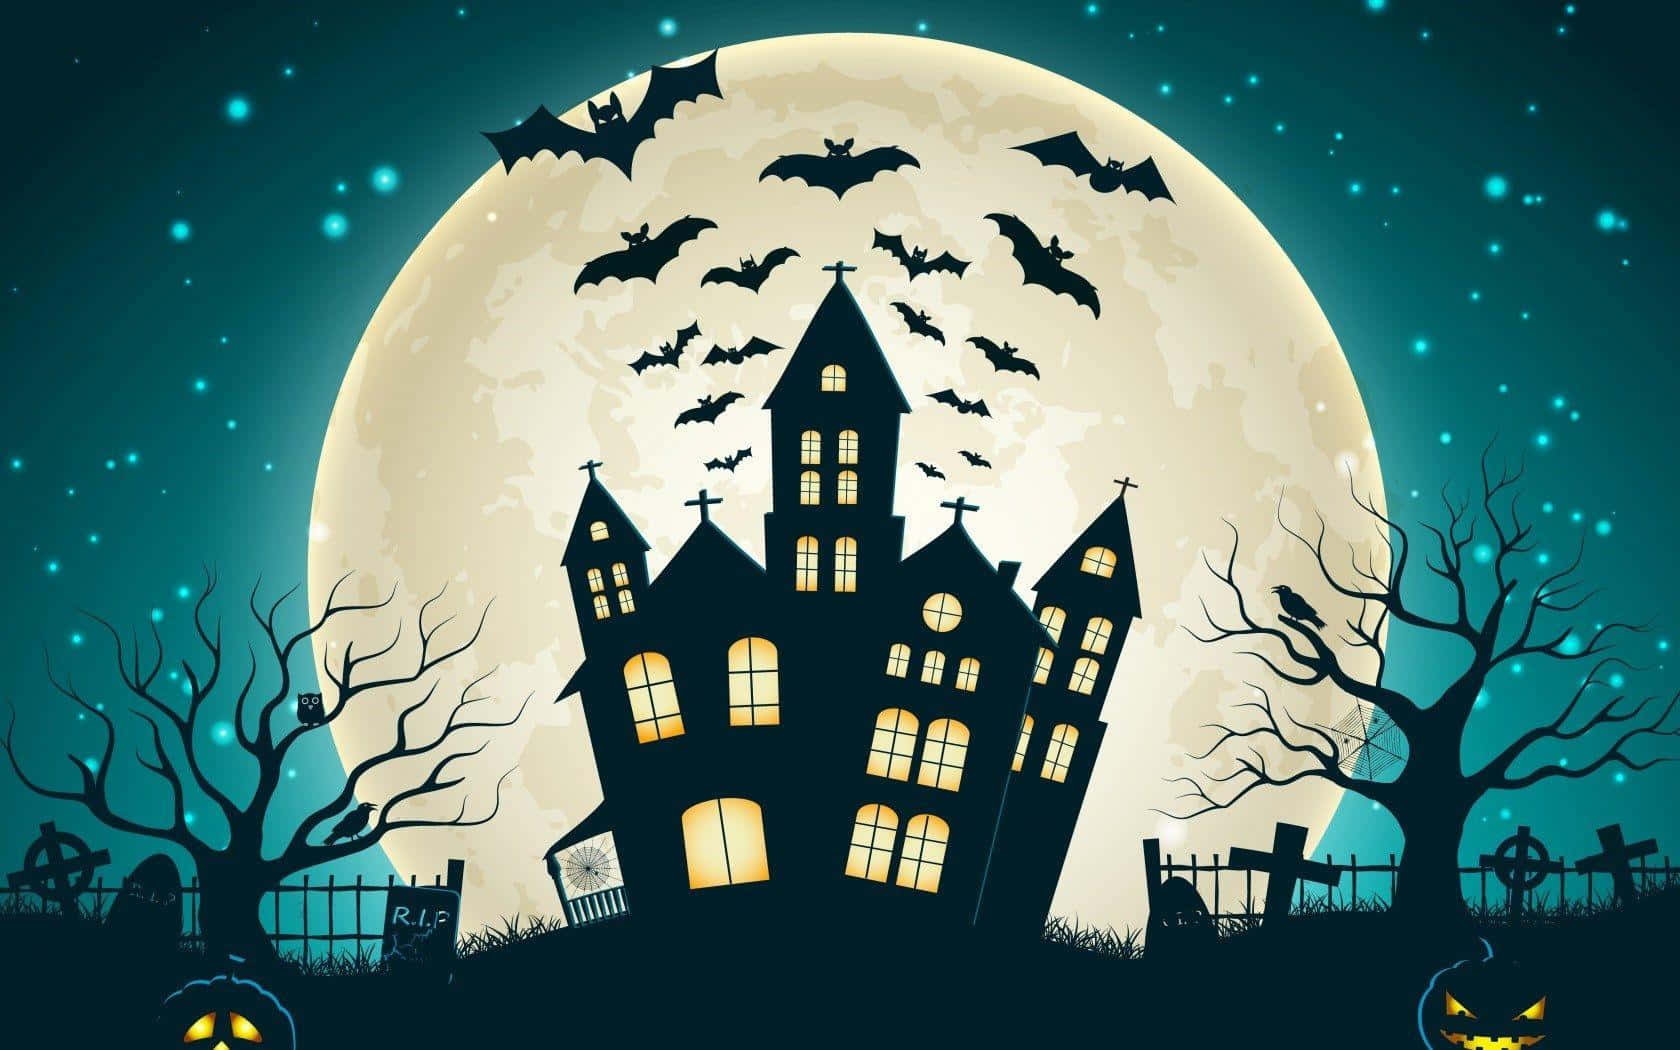 Imagende Una Casa Embrujada De Dibujos Animados De Halloween Con Una Luna Llena Y Estrellas.